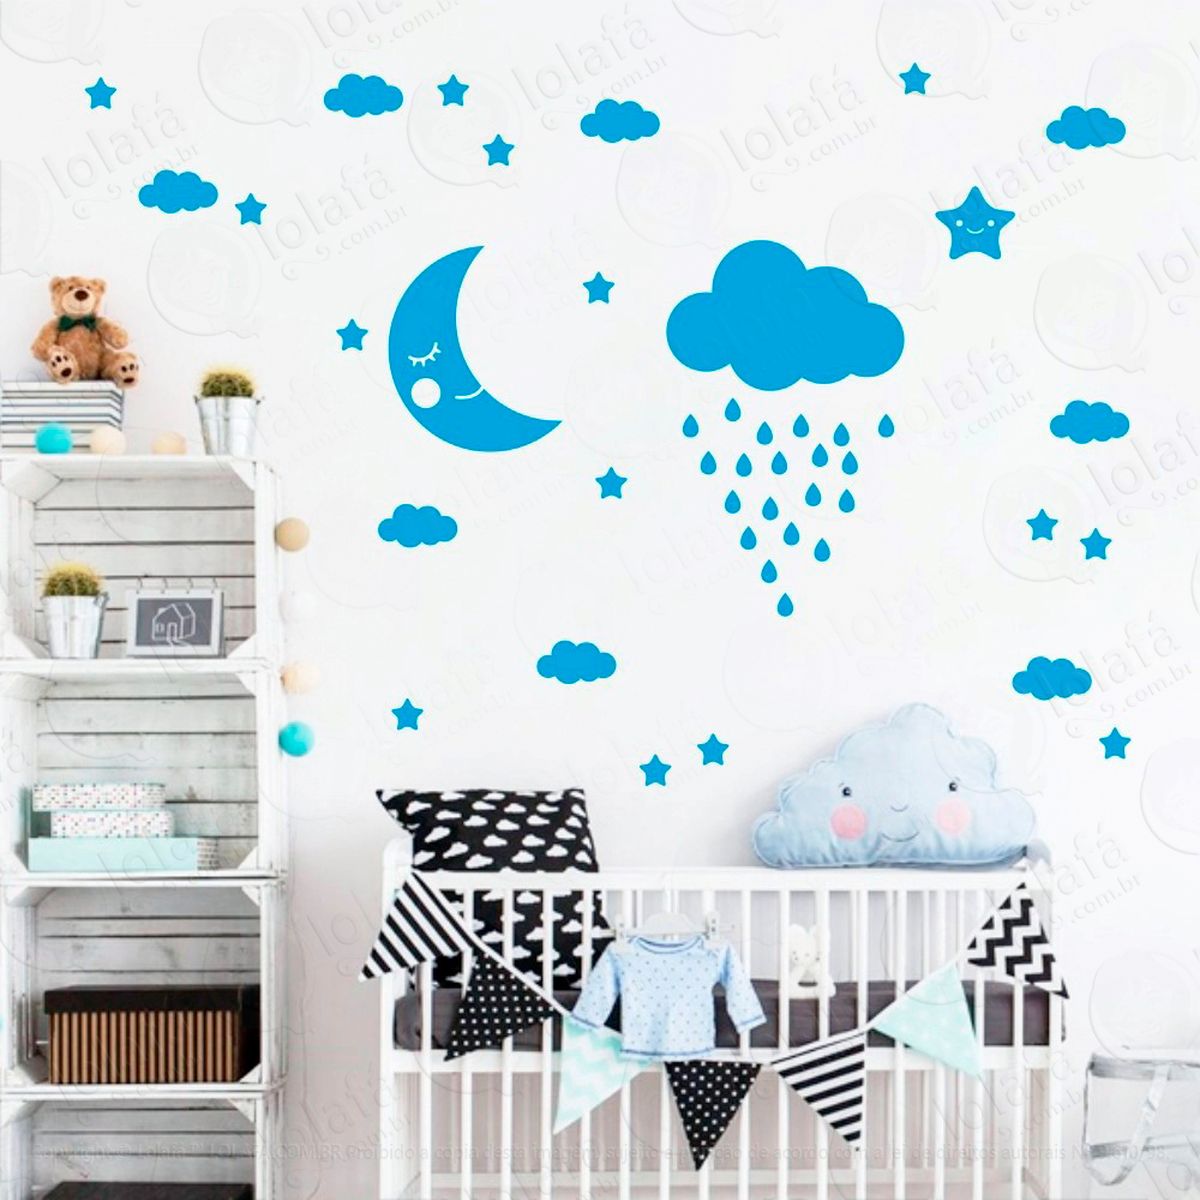 adesivos lua nuvens e estrelas 65 peças adesivos para quarto de bebê infantil - mod:888